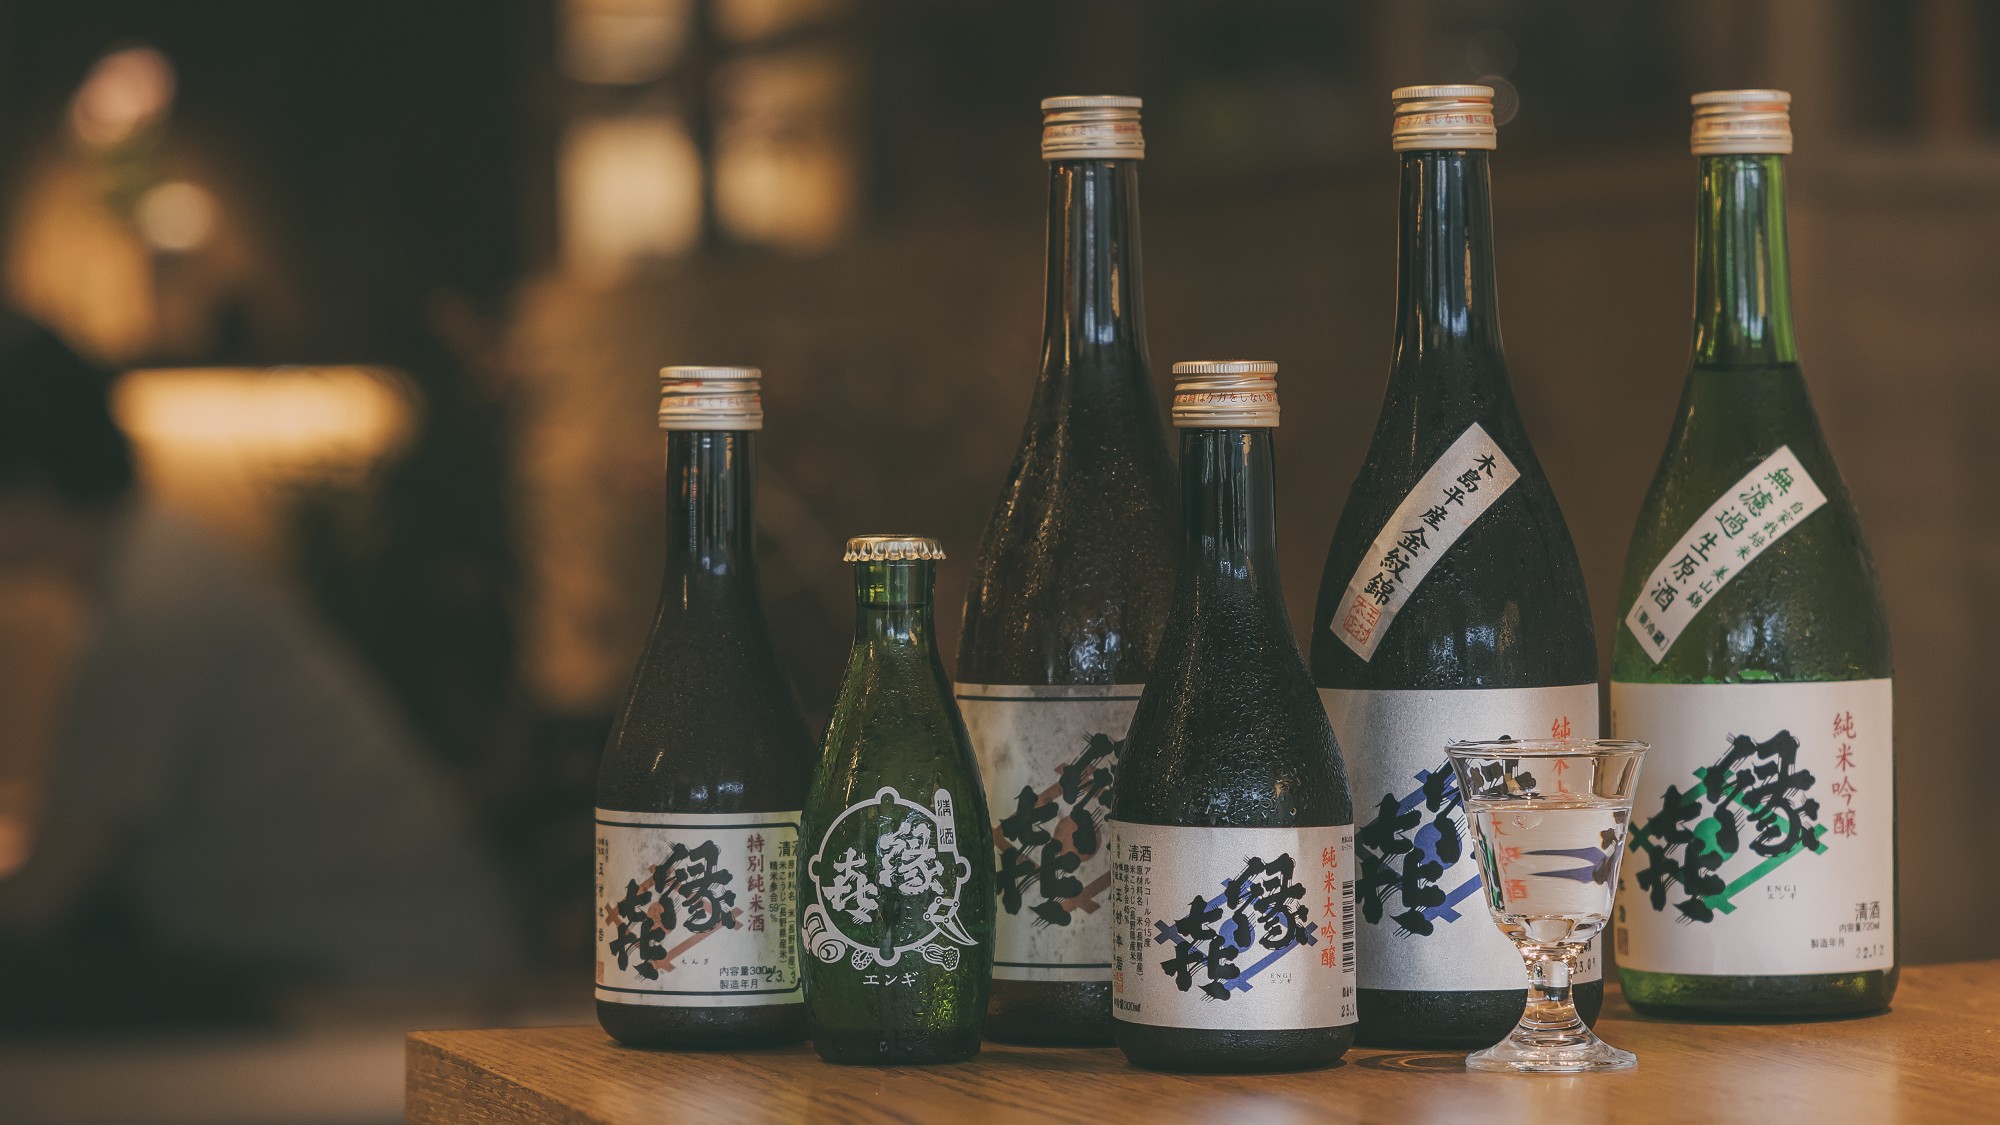 当館のルーツでもある、1805年創業の造り酒屋「玉村本店」が醸す日本酒「縁喜」